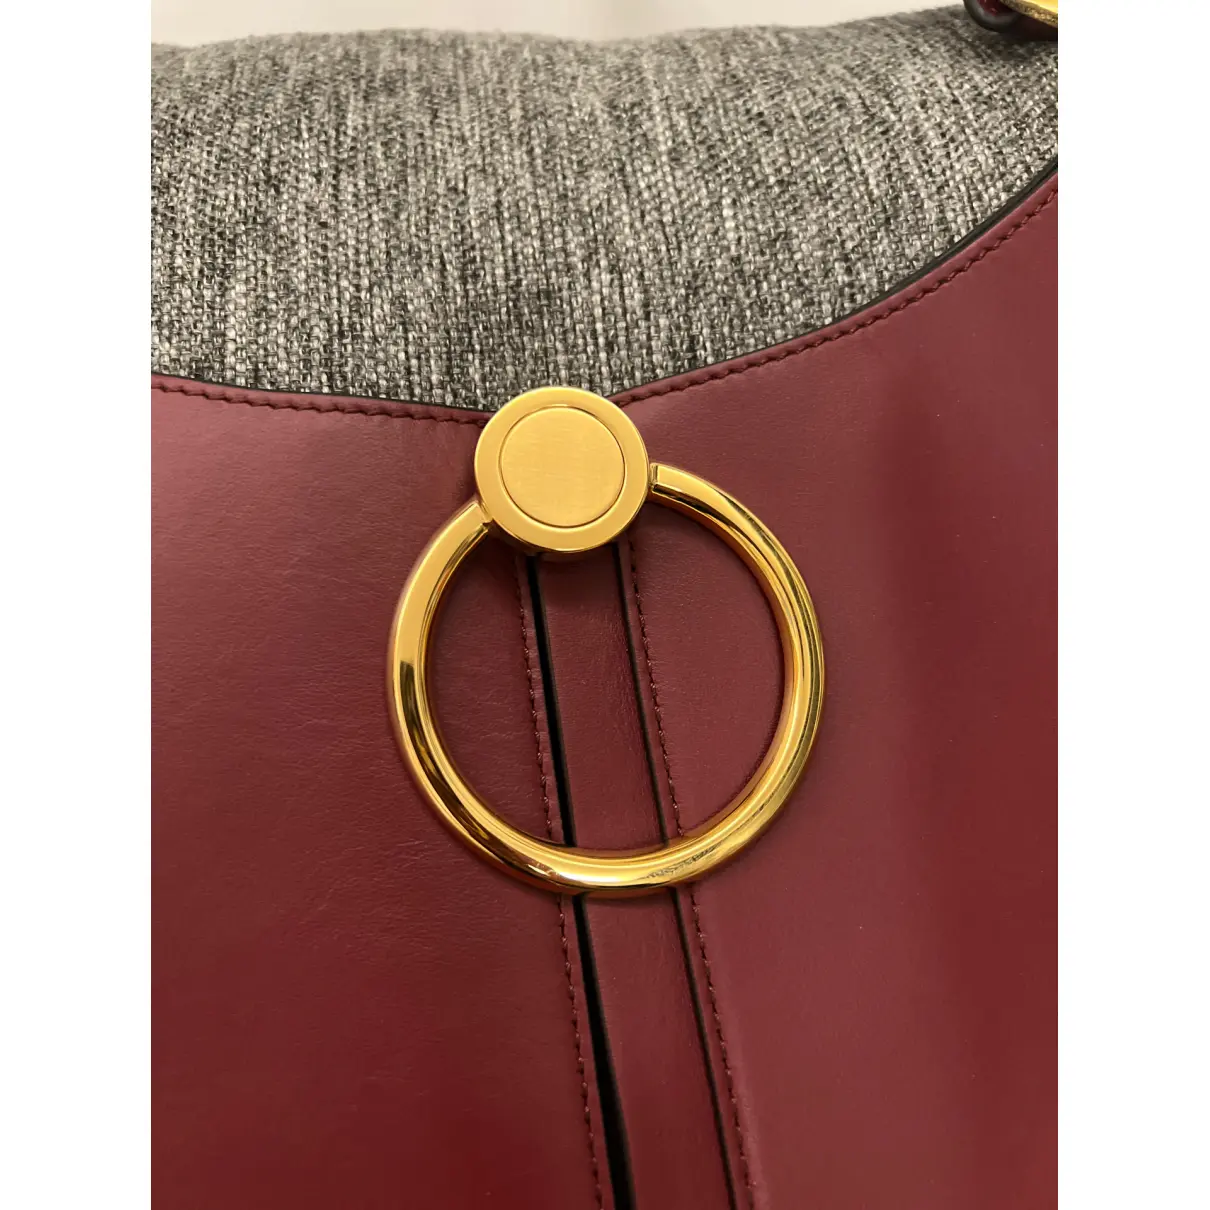 Buy Marni Earring leather handbag online